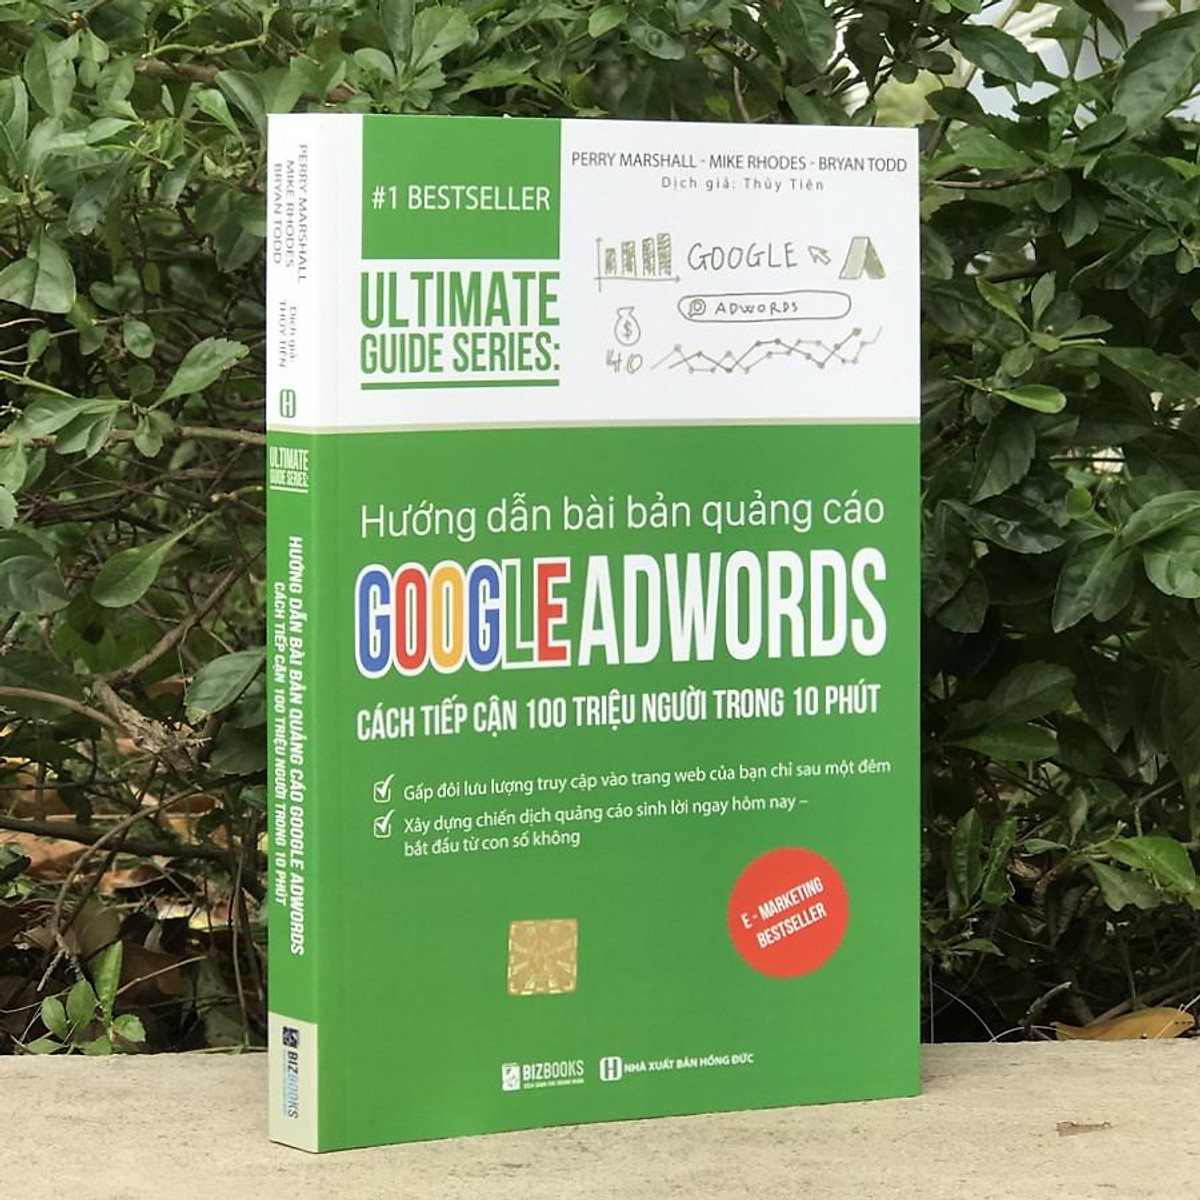 Sách - Hướng dẫn bài bản quảng cáo Google Adwords: Cách Tiếp Cận 100 Triệu Người Trong 10 Phút - 1 BestSeller